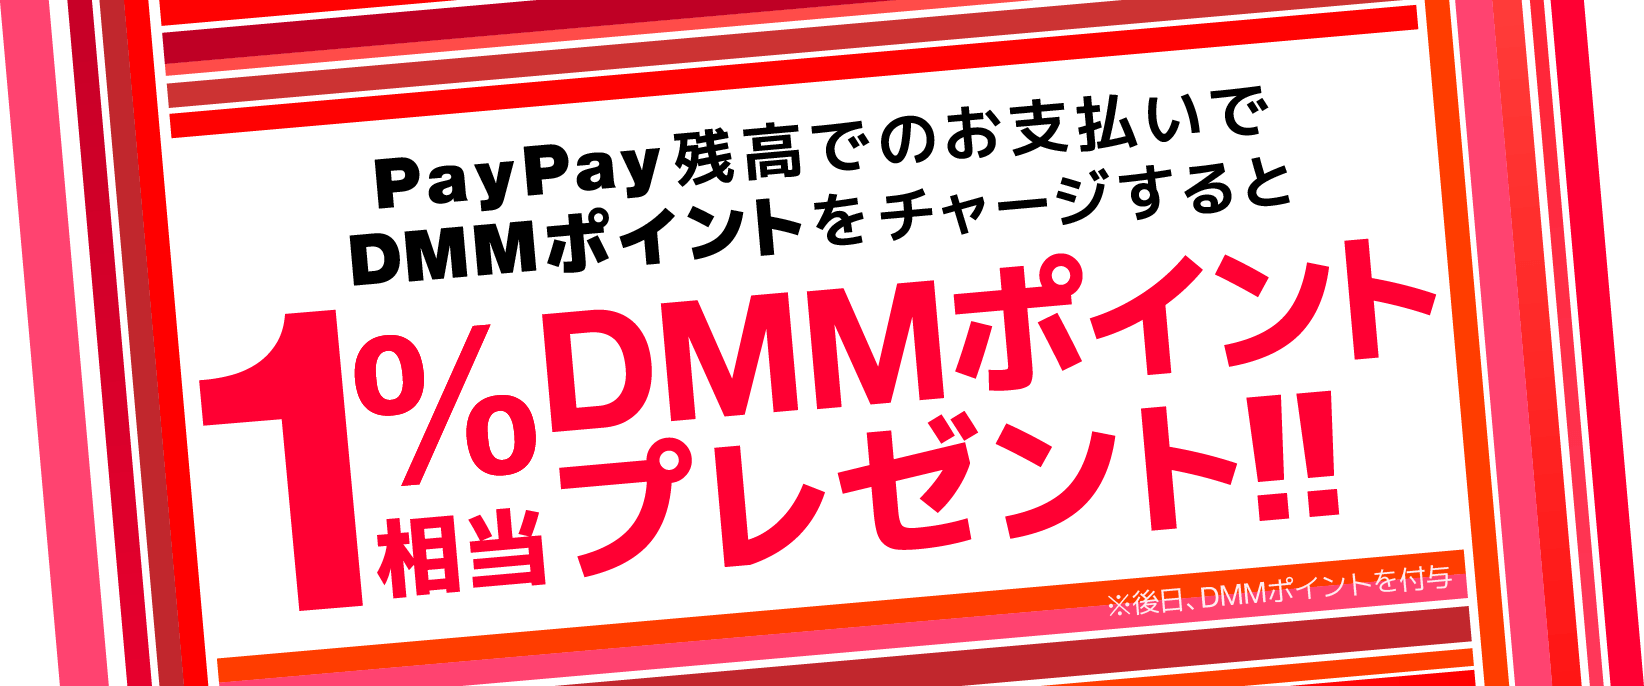 PayPay残高でのお支払いでDMMポイントをチャージすると1%相当DMMポイントプレゼント！